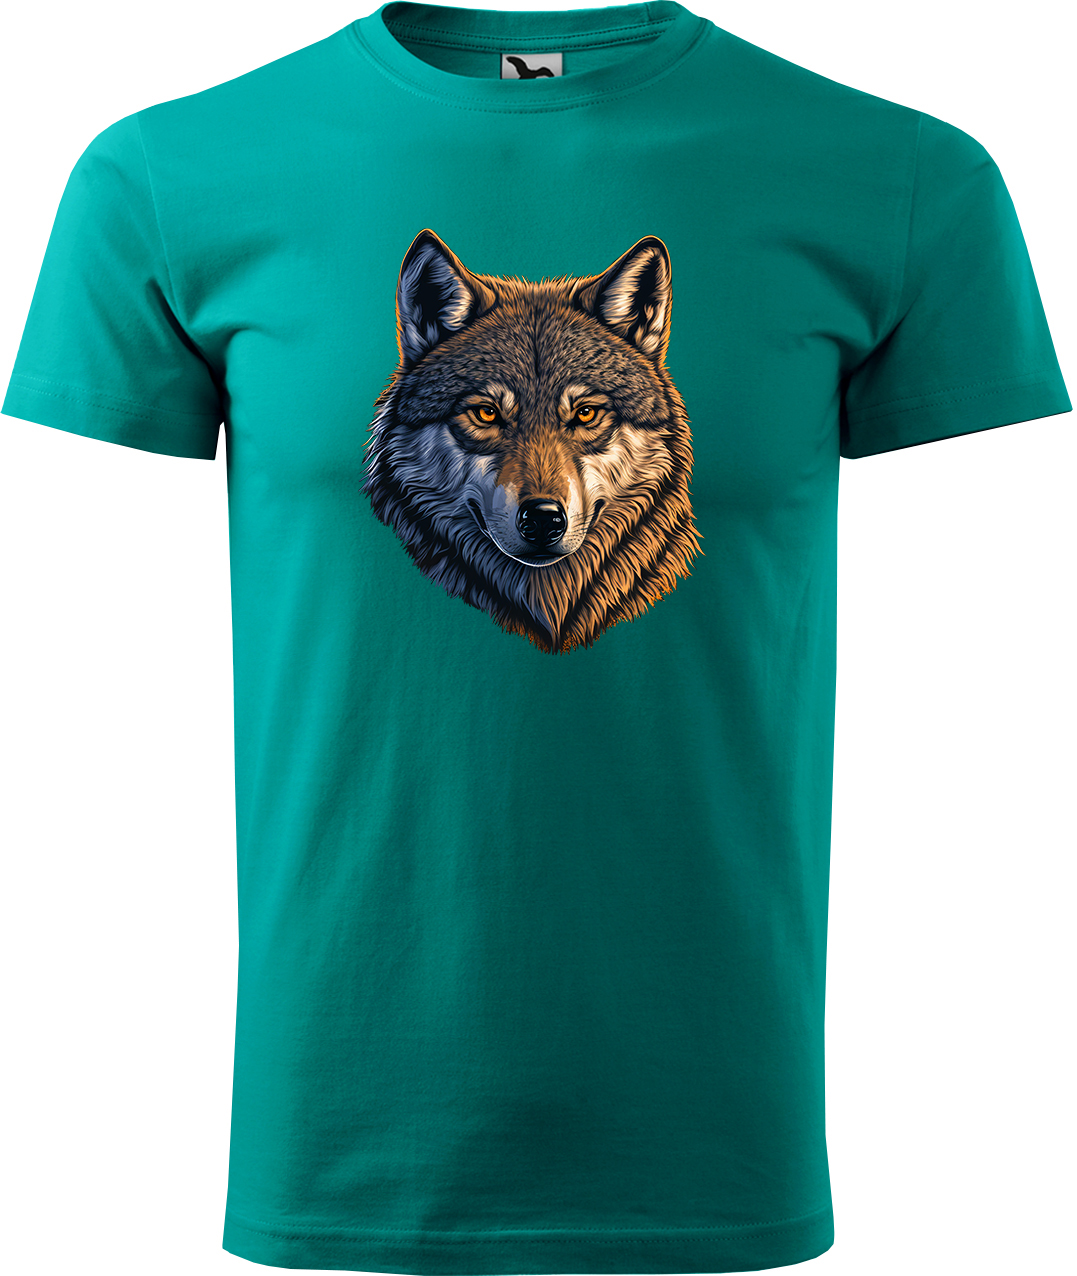 Pánské tričko s vlkem - Hlava vlka Velikost: 3XL, Barva: Emerald (19), Střih: pánský